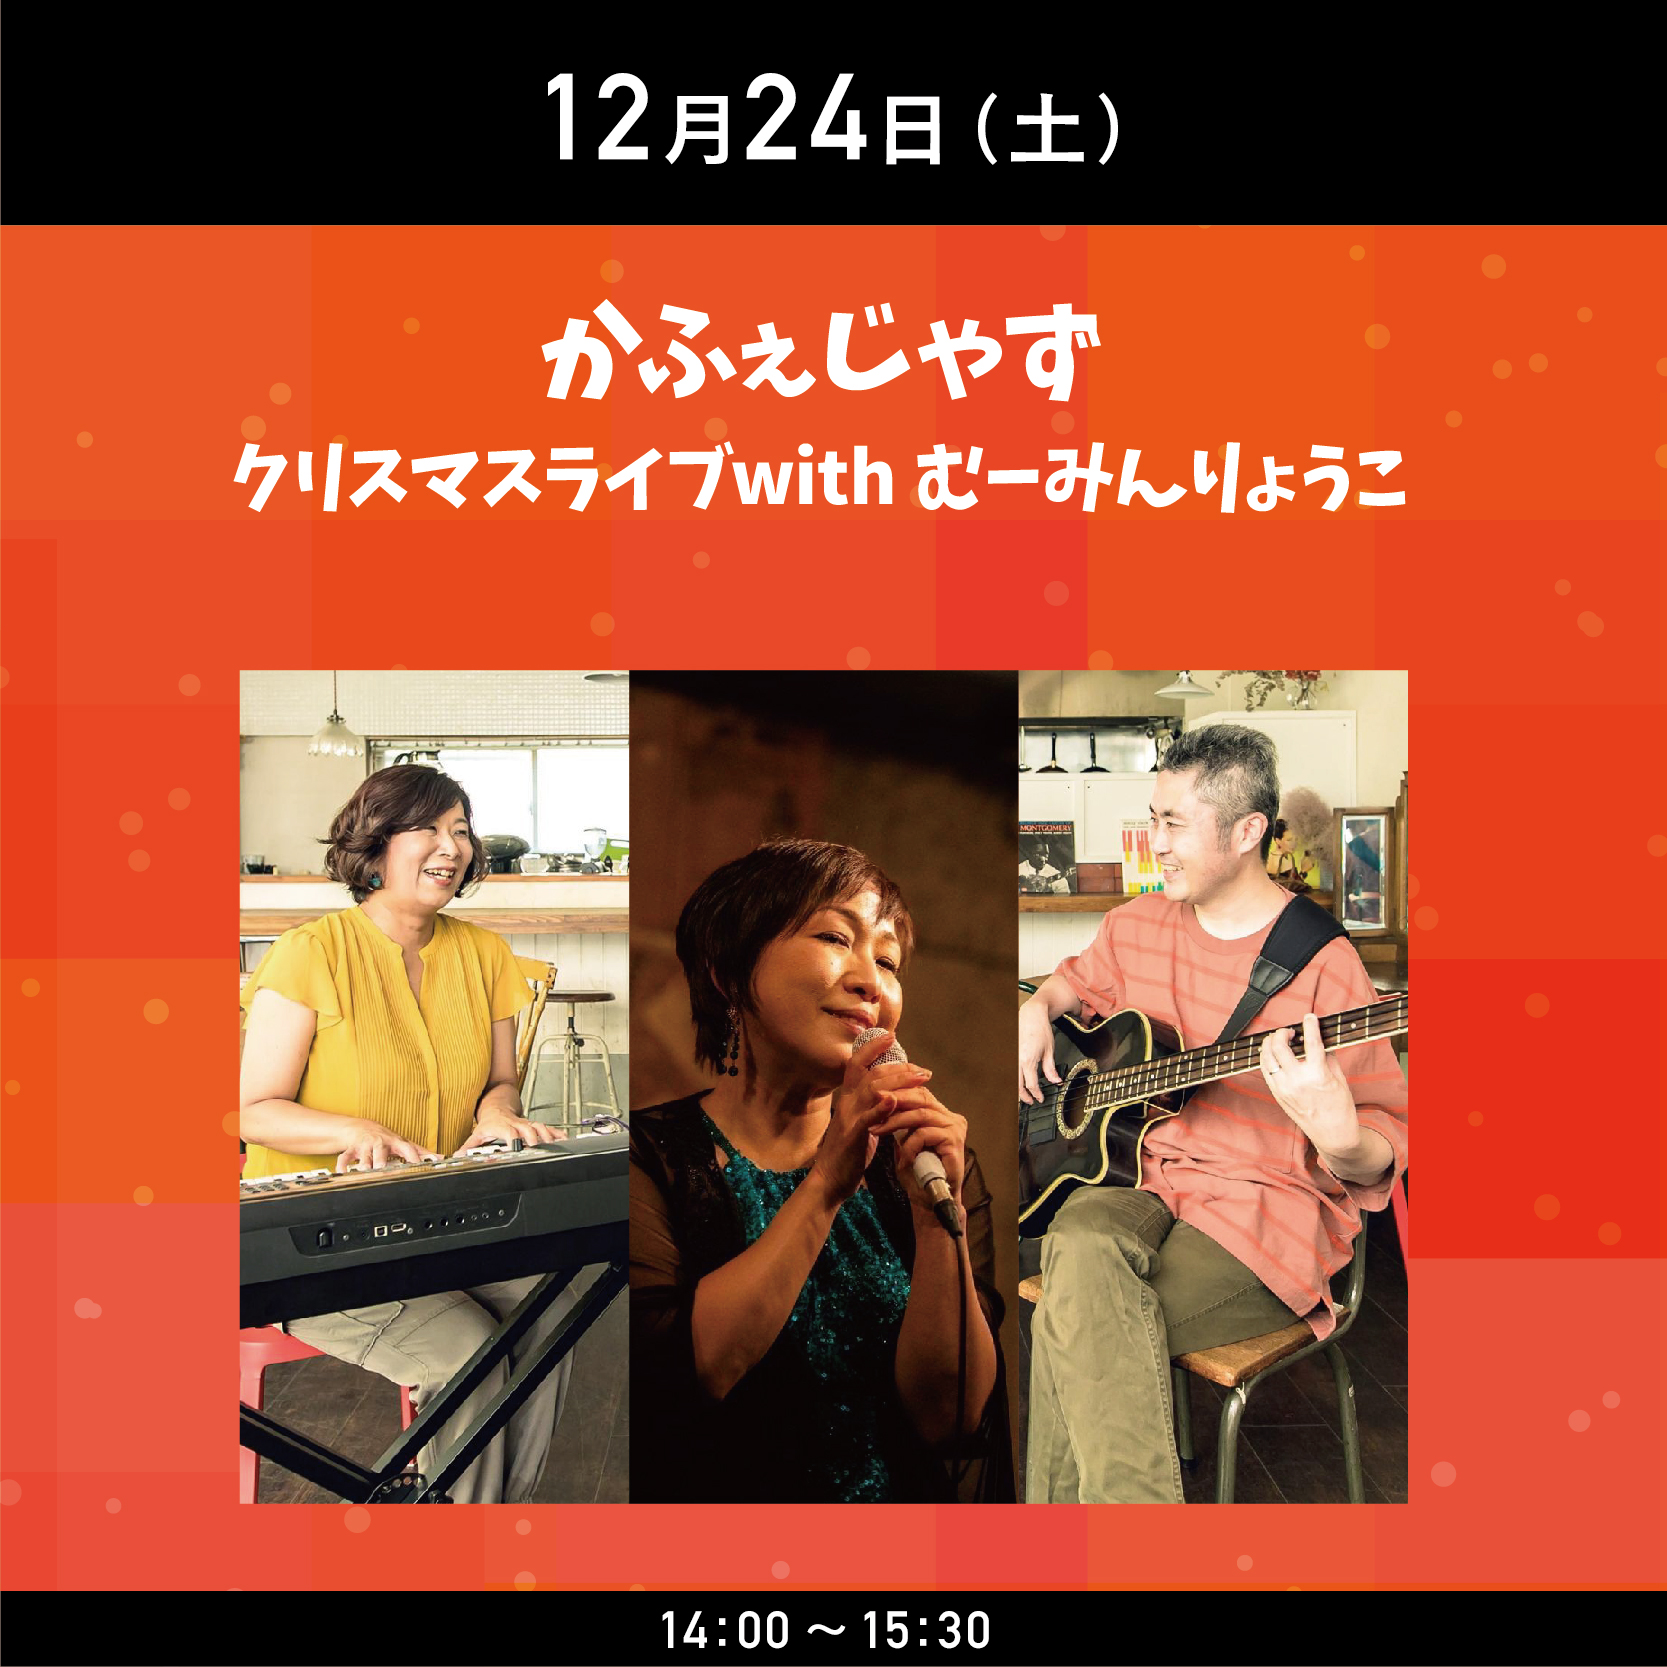 ナディアパークWinter Fes 2022 「かふぇじゃずクリスマスライブ withむーみんりょうこ」